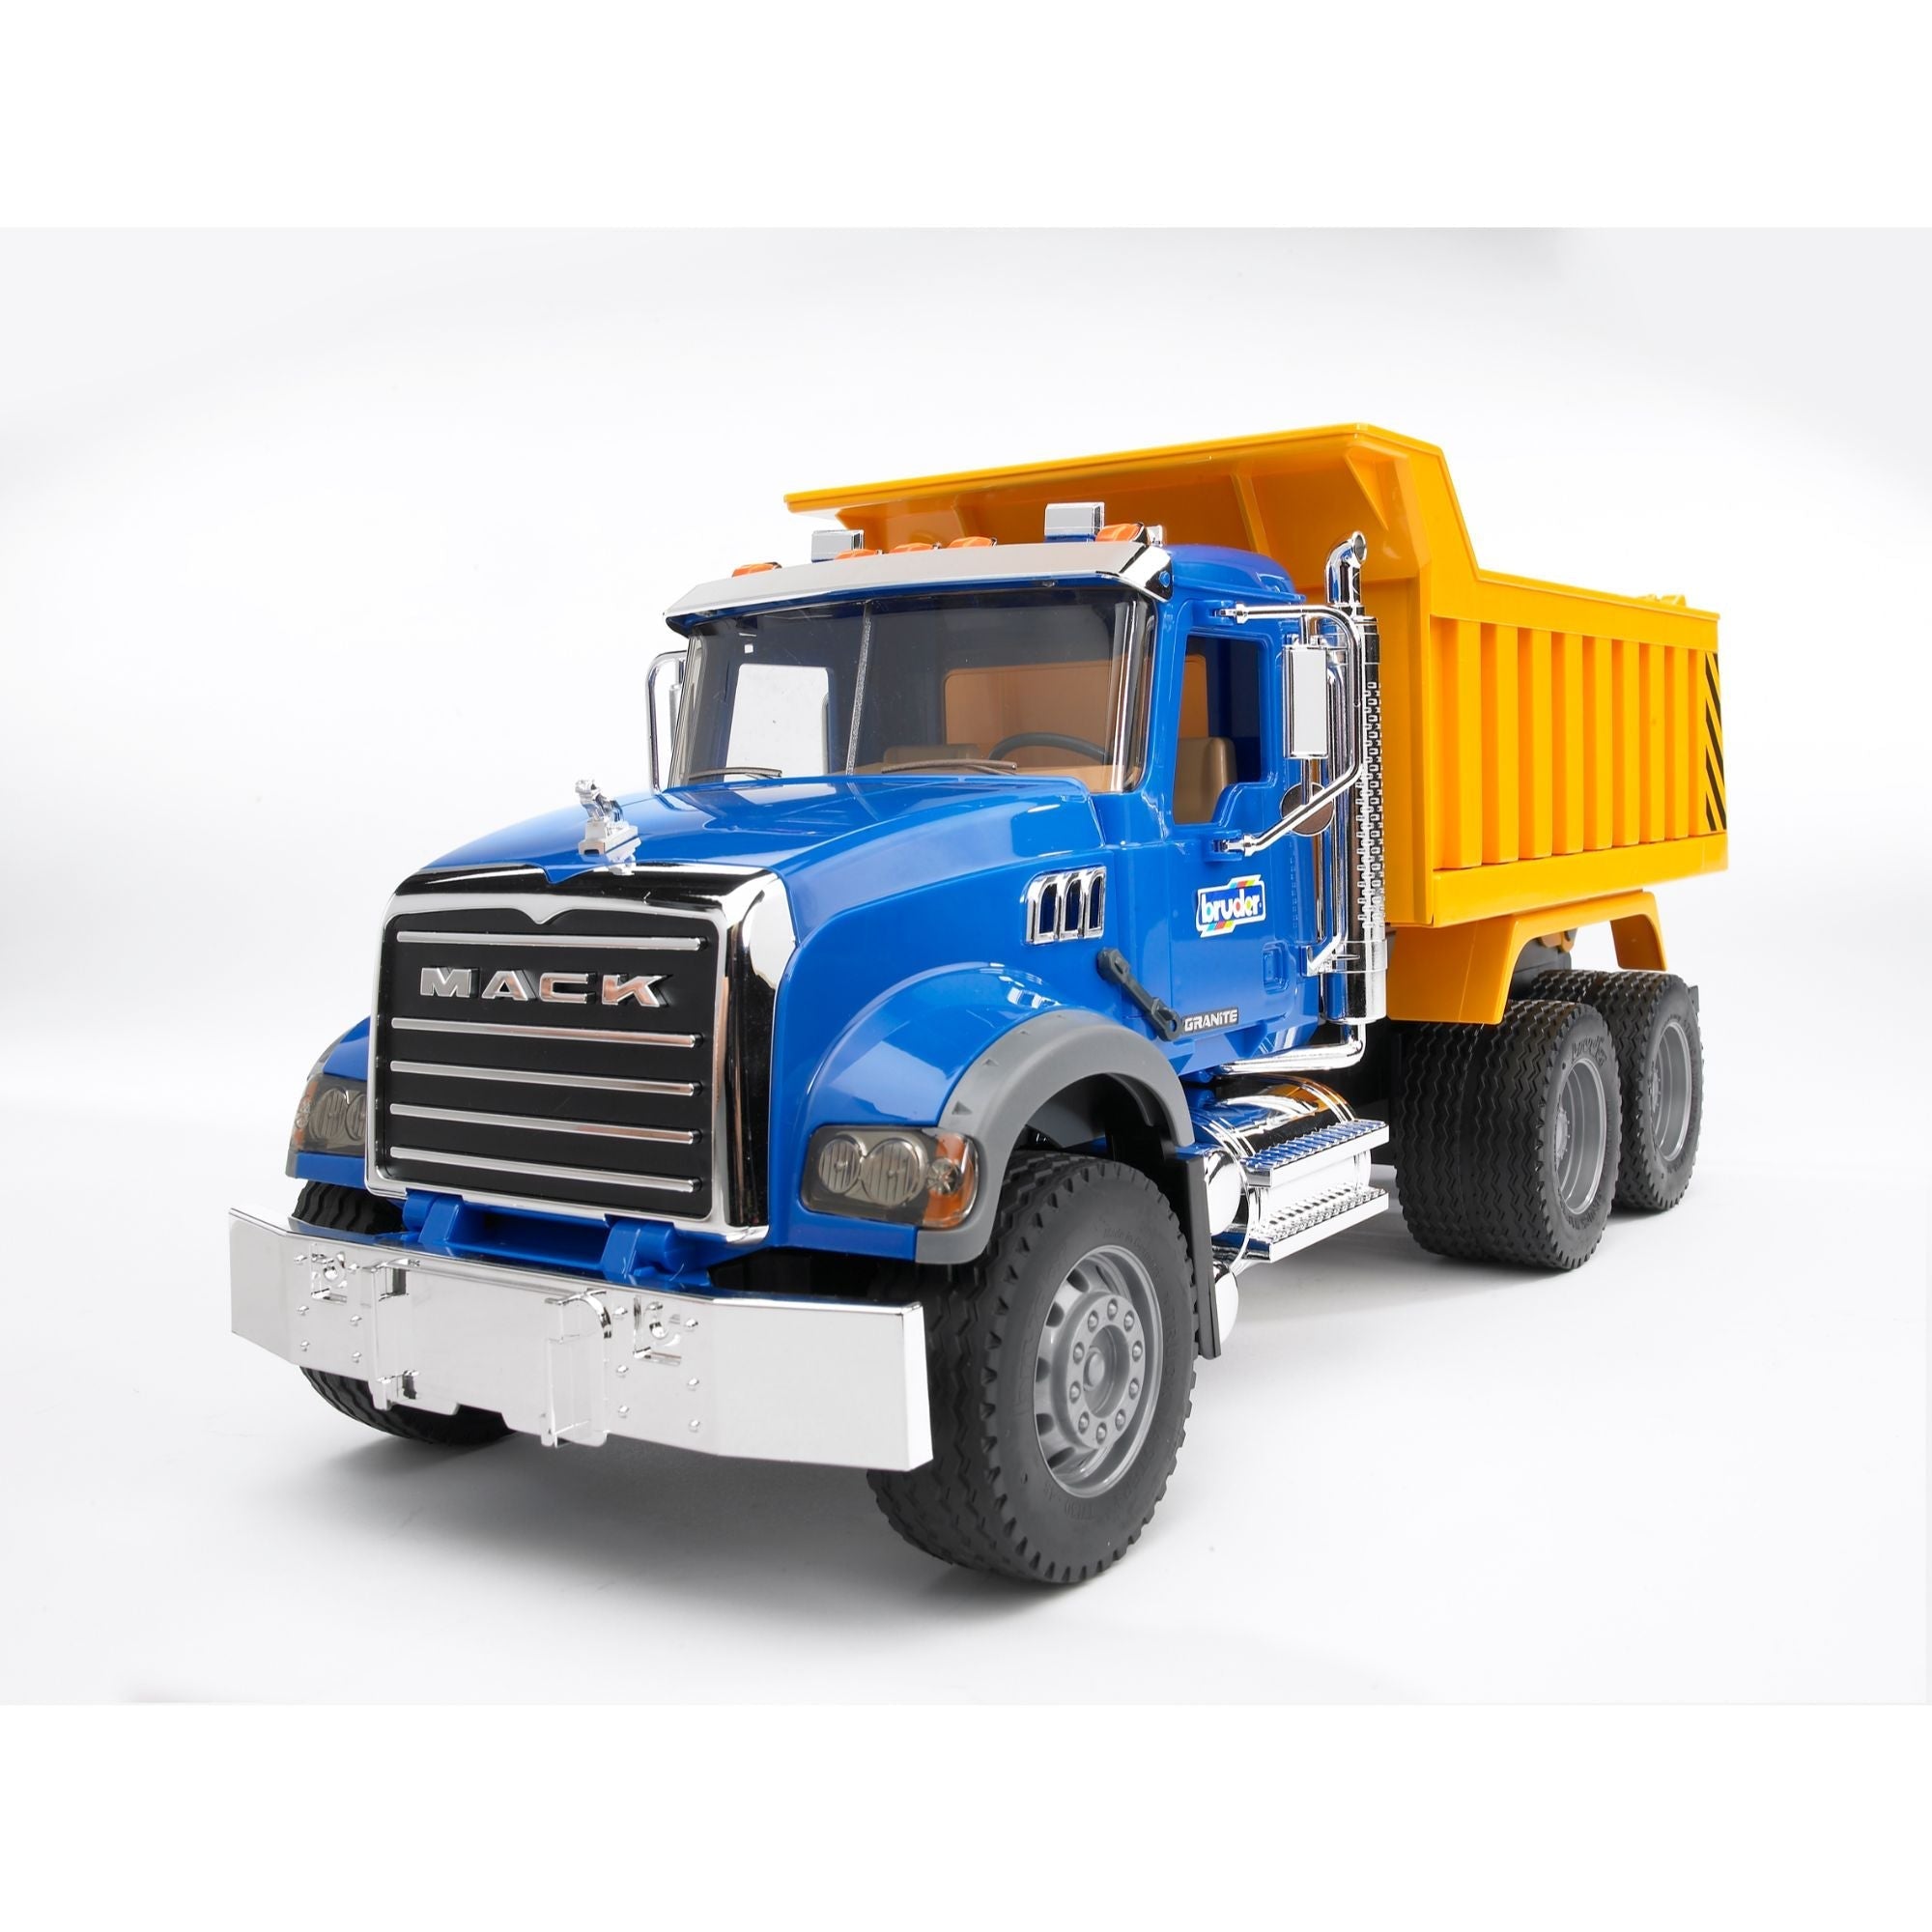 Bruder-MACK Granite Dump Truck-02815-Legacy Toys